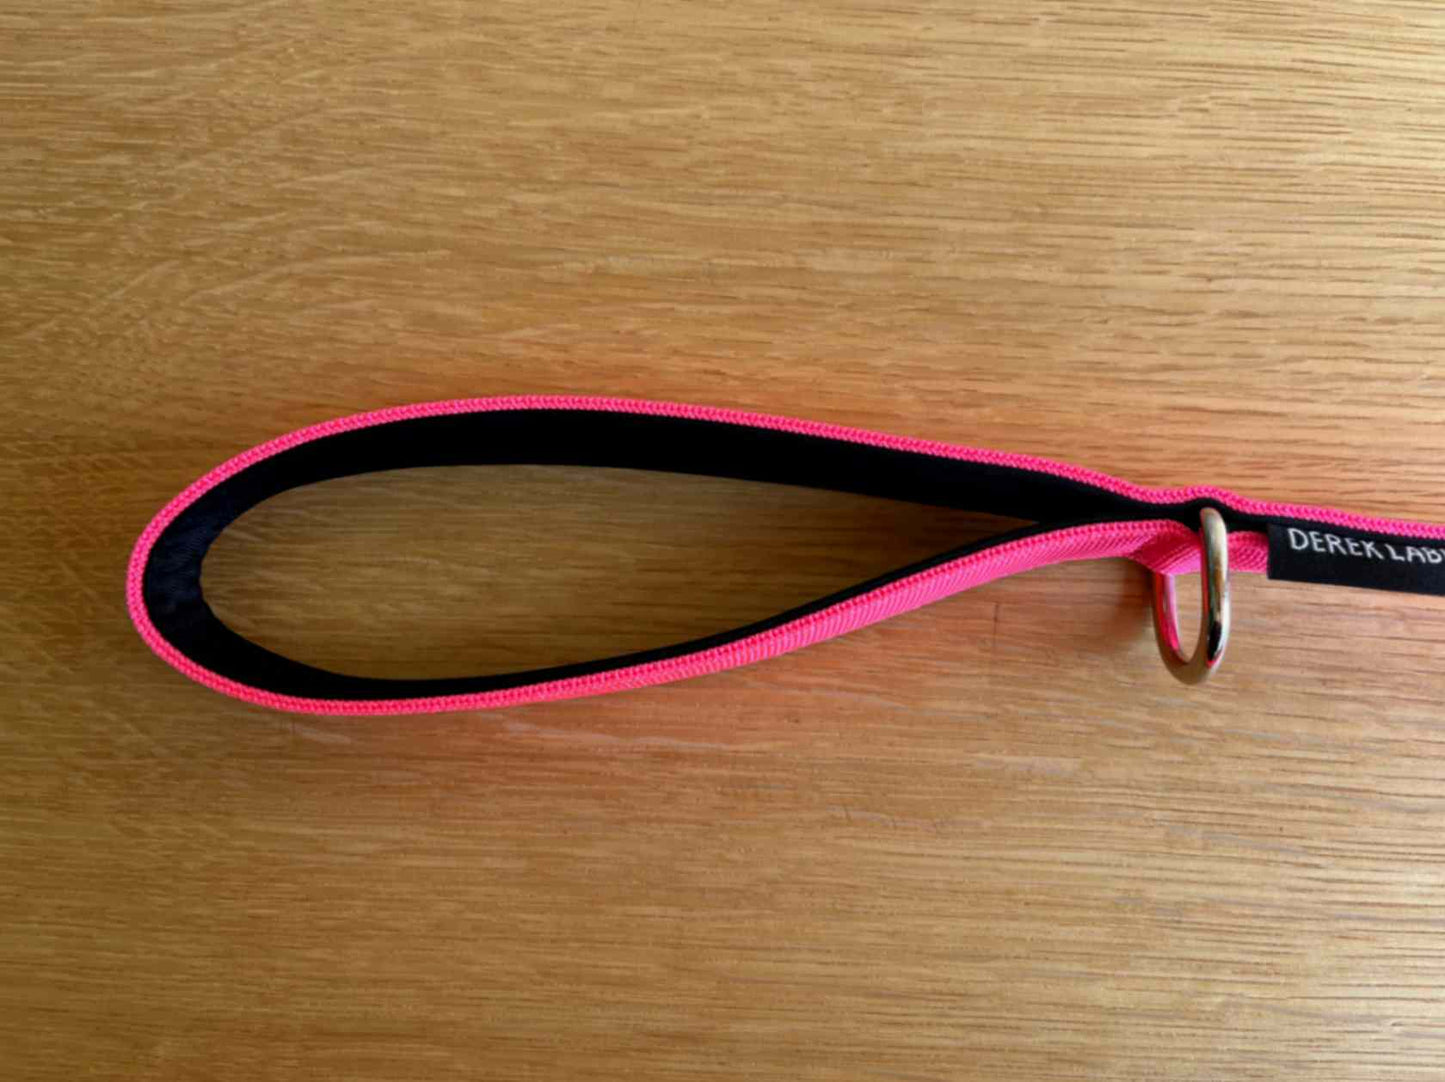 Handle of pink dog leash